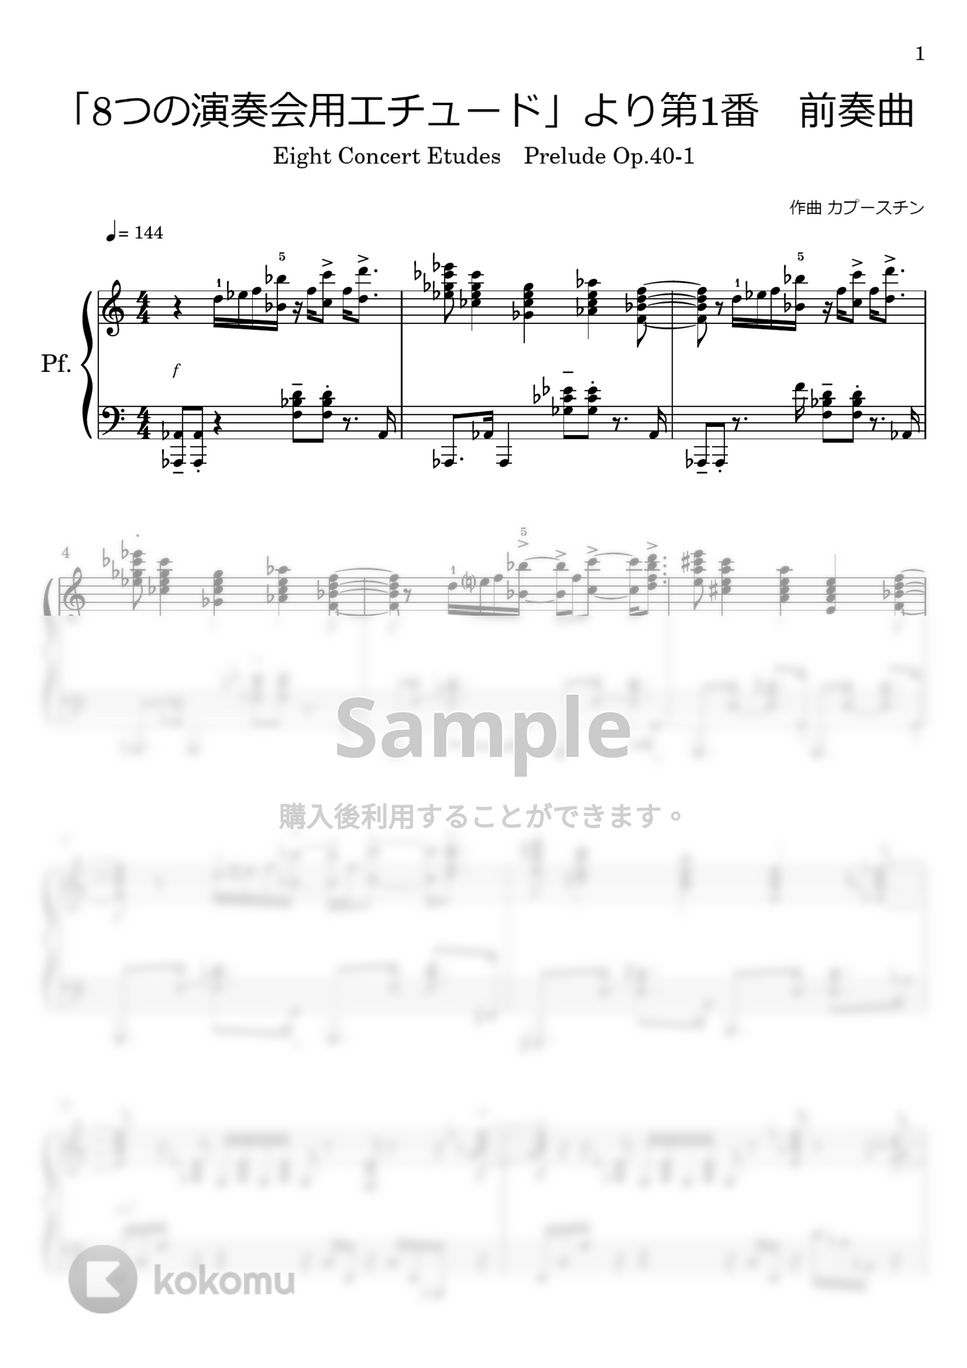 カプースチン - 前奏曲 (「8つの演奏会用エチュード 」より　Op40-1) by わたなべももこ